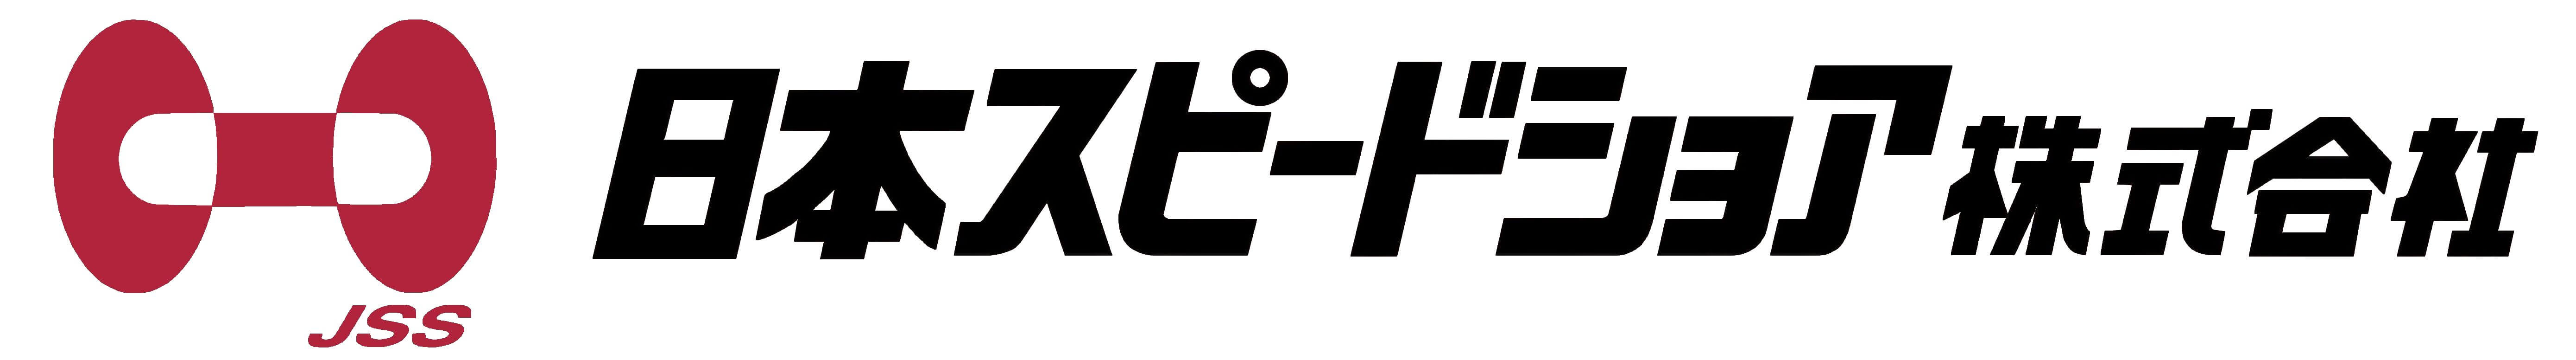 日本スピードショア株式会社-ロゴ